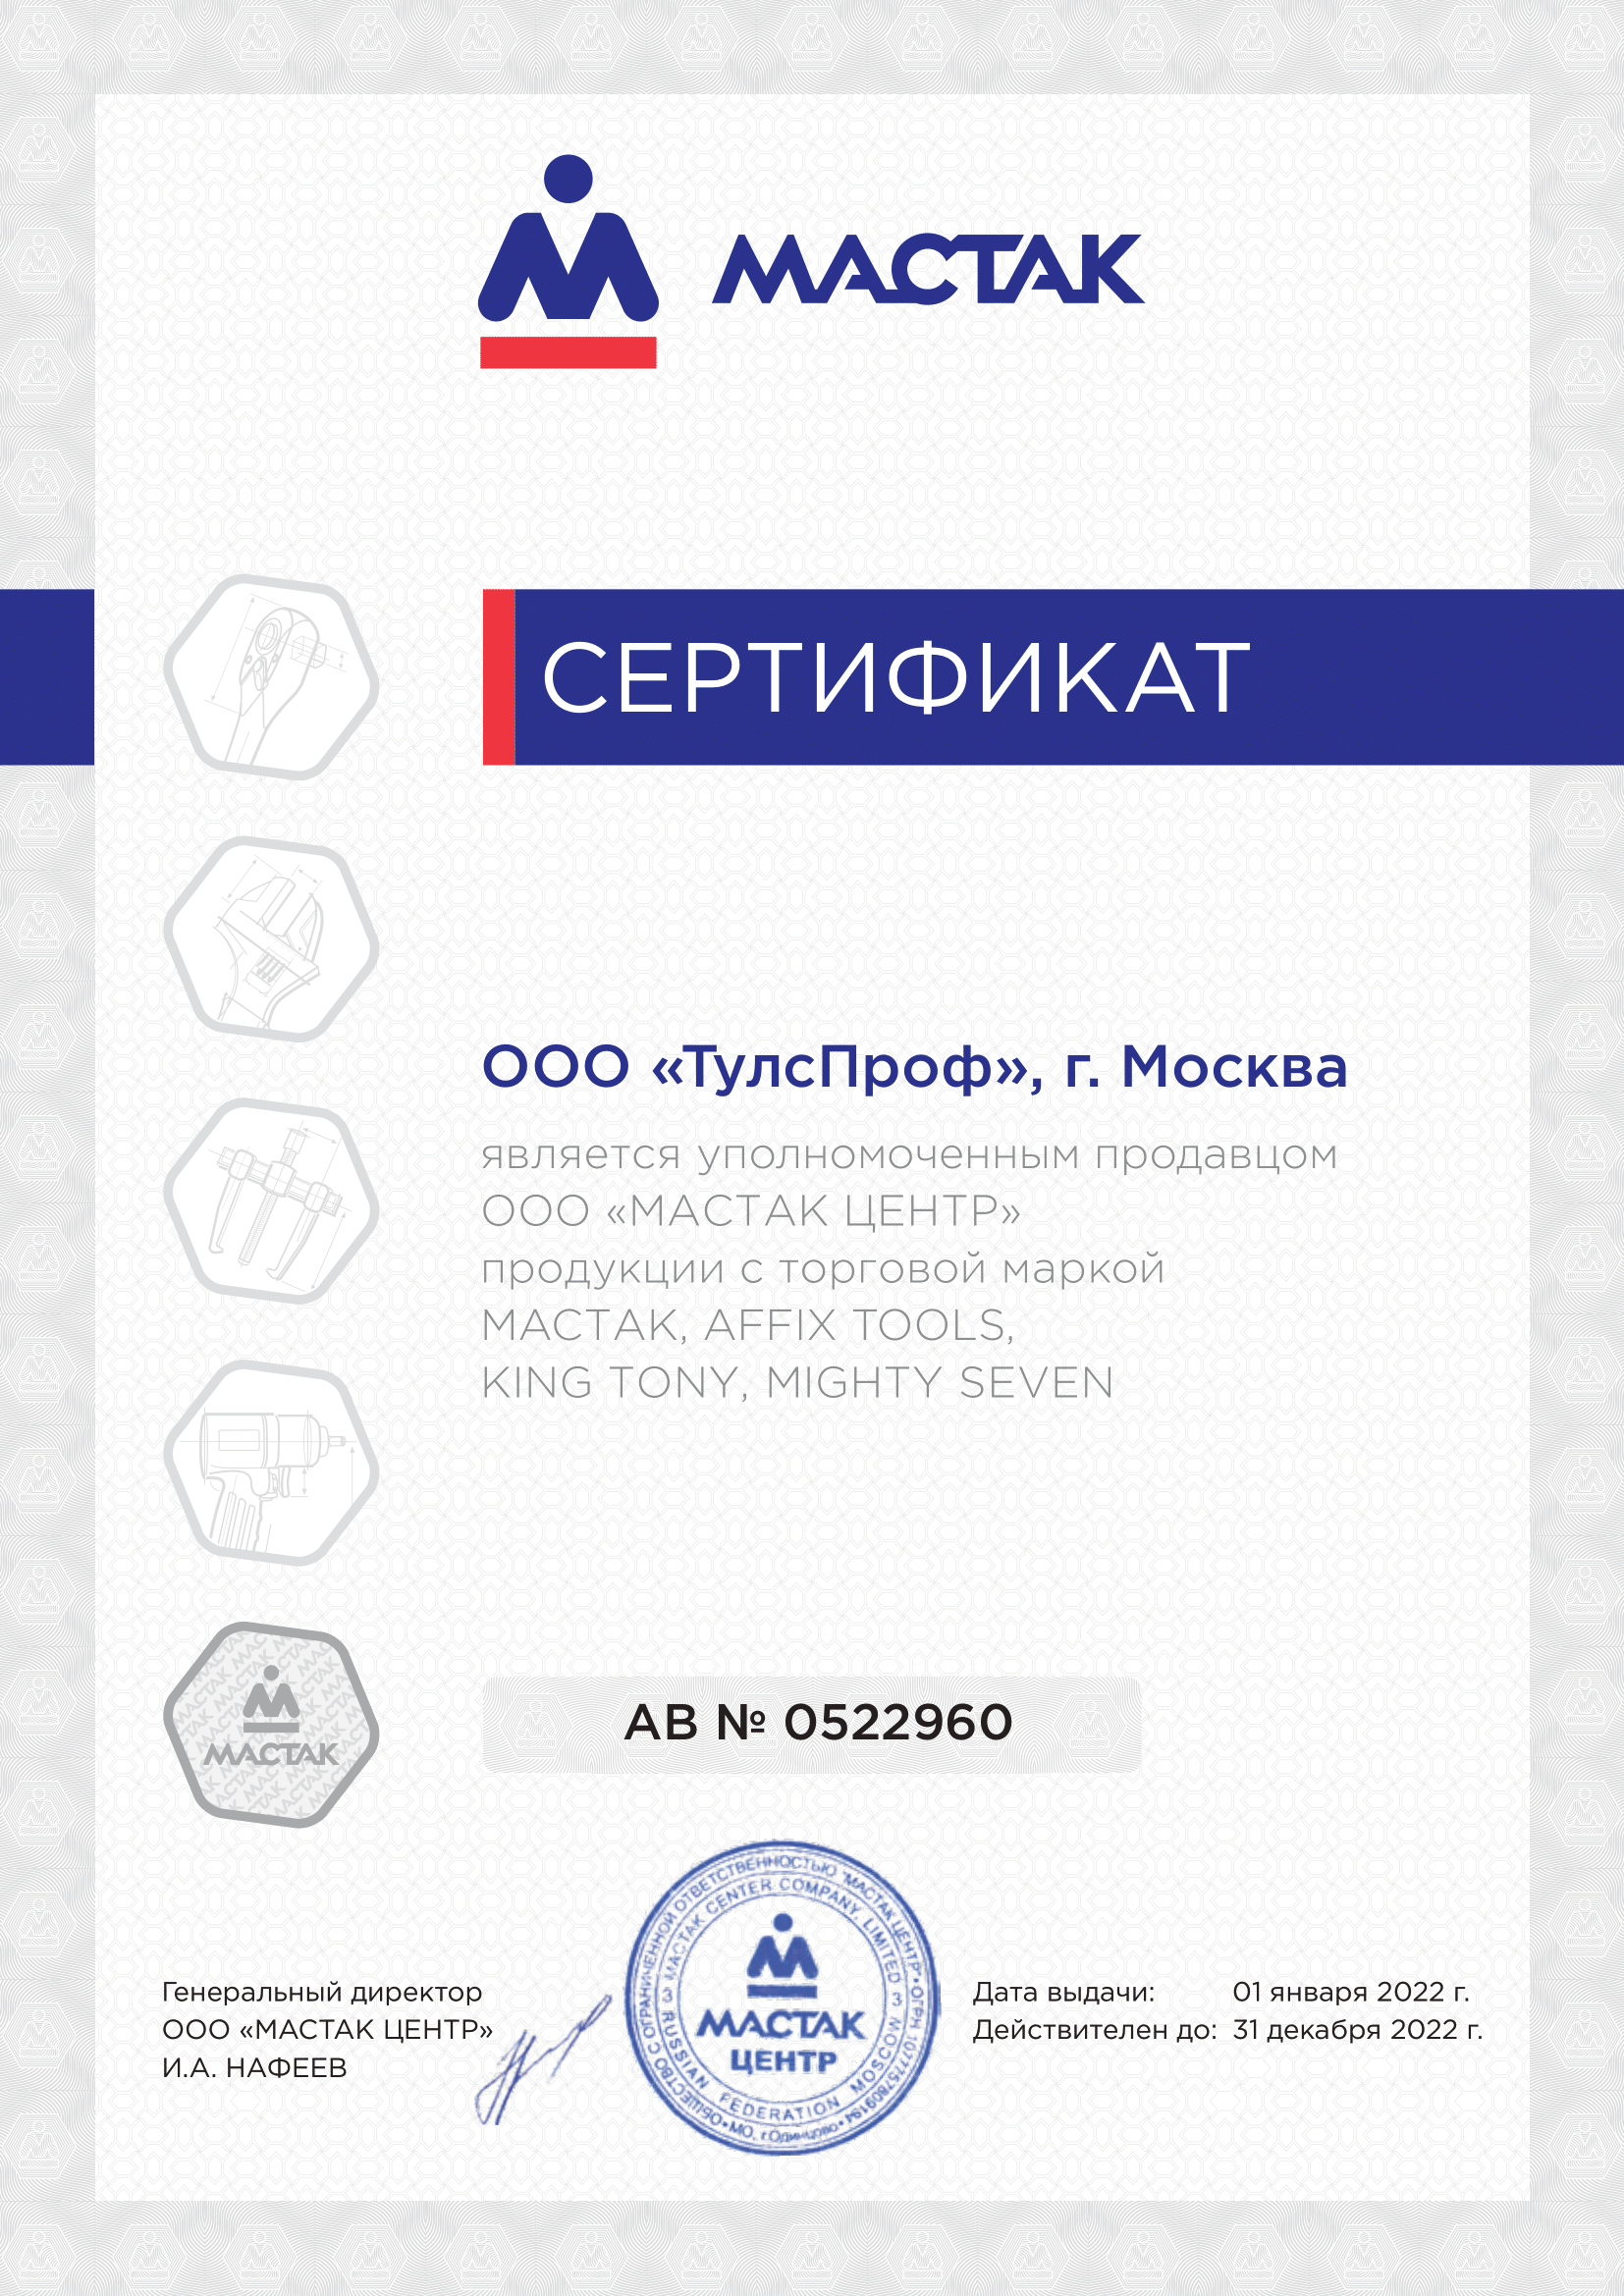 Сертификат уполномоченного продавца ООО "МАСТАК ЦЕНТР"